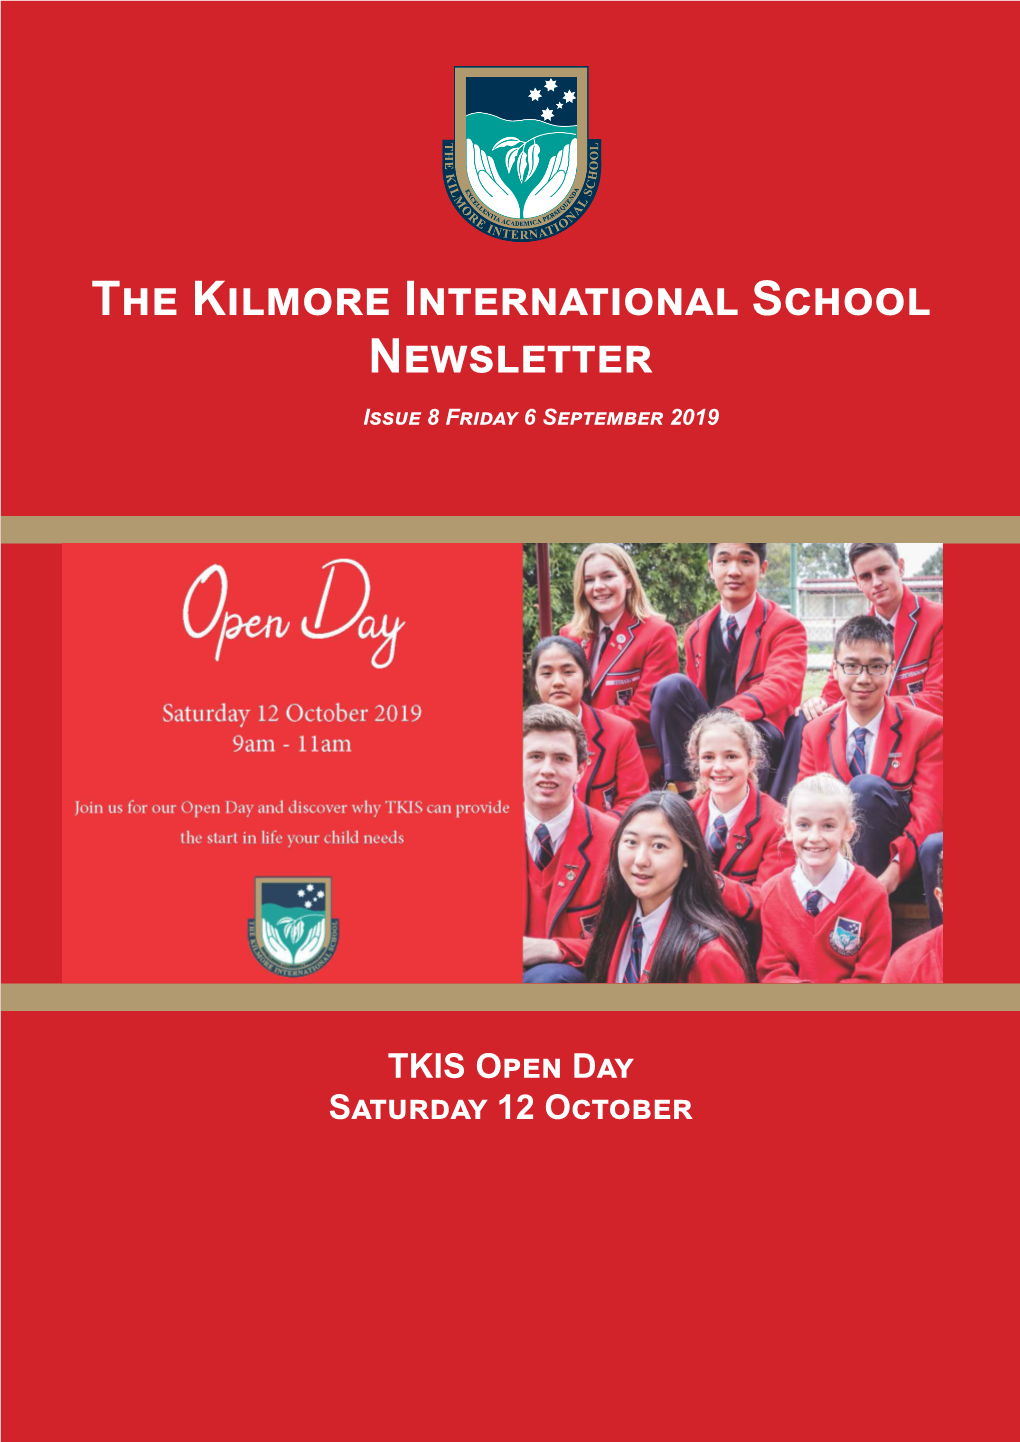 The Kilmore International School Newsletter Issue 8 Friday 6 September 2019